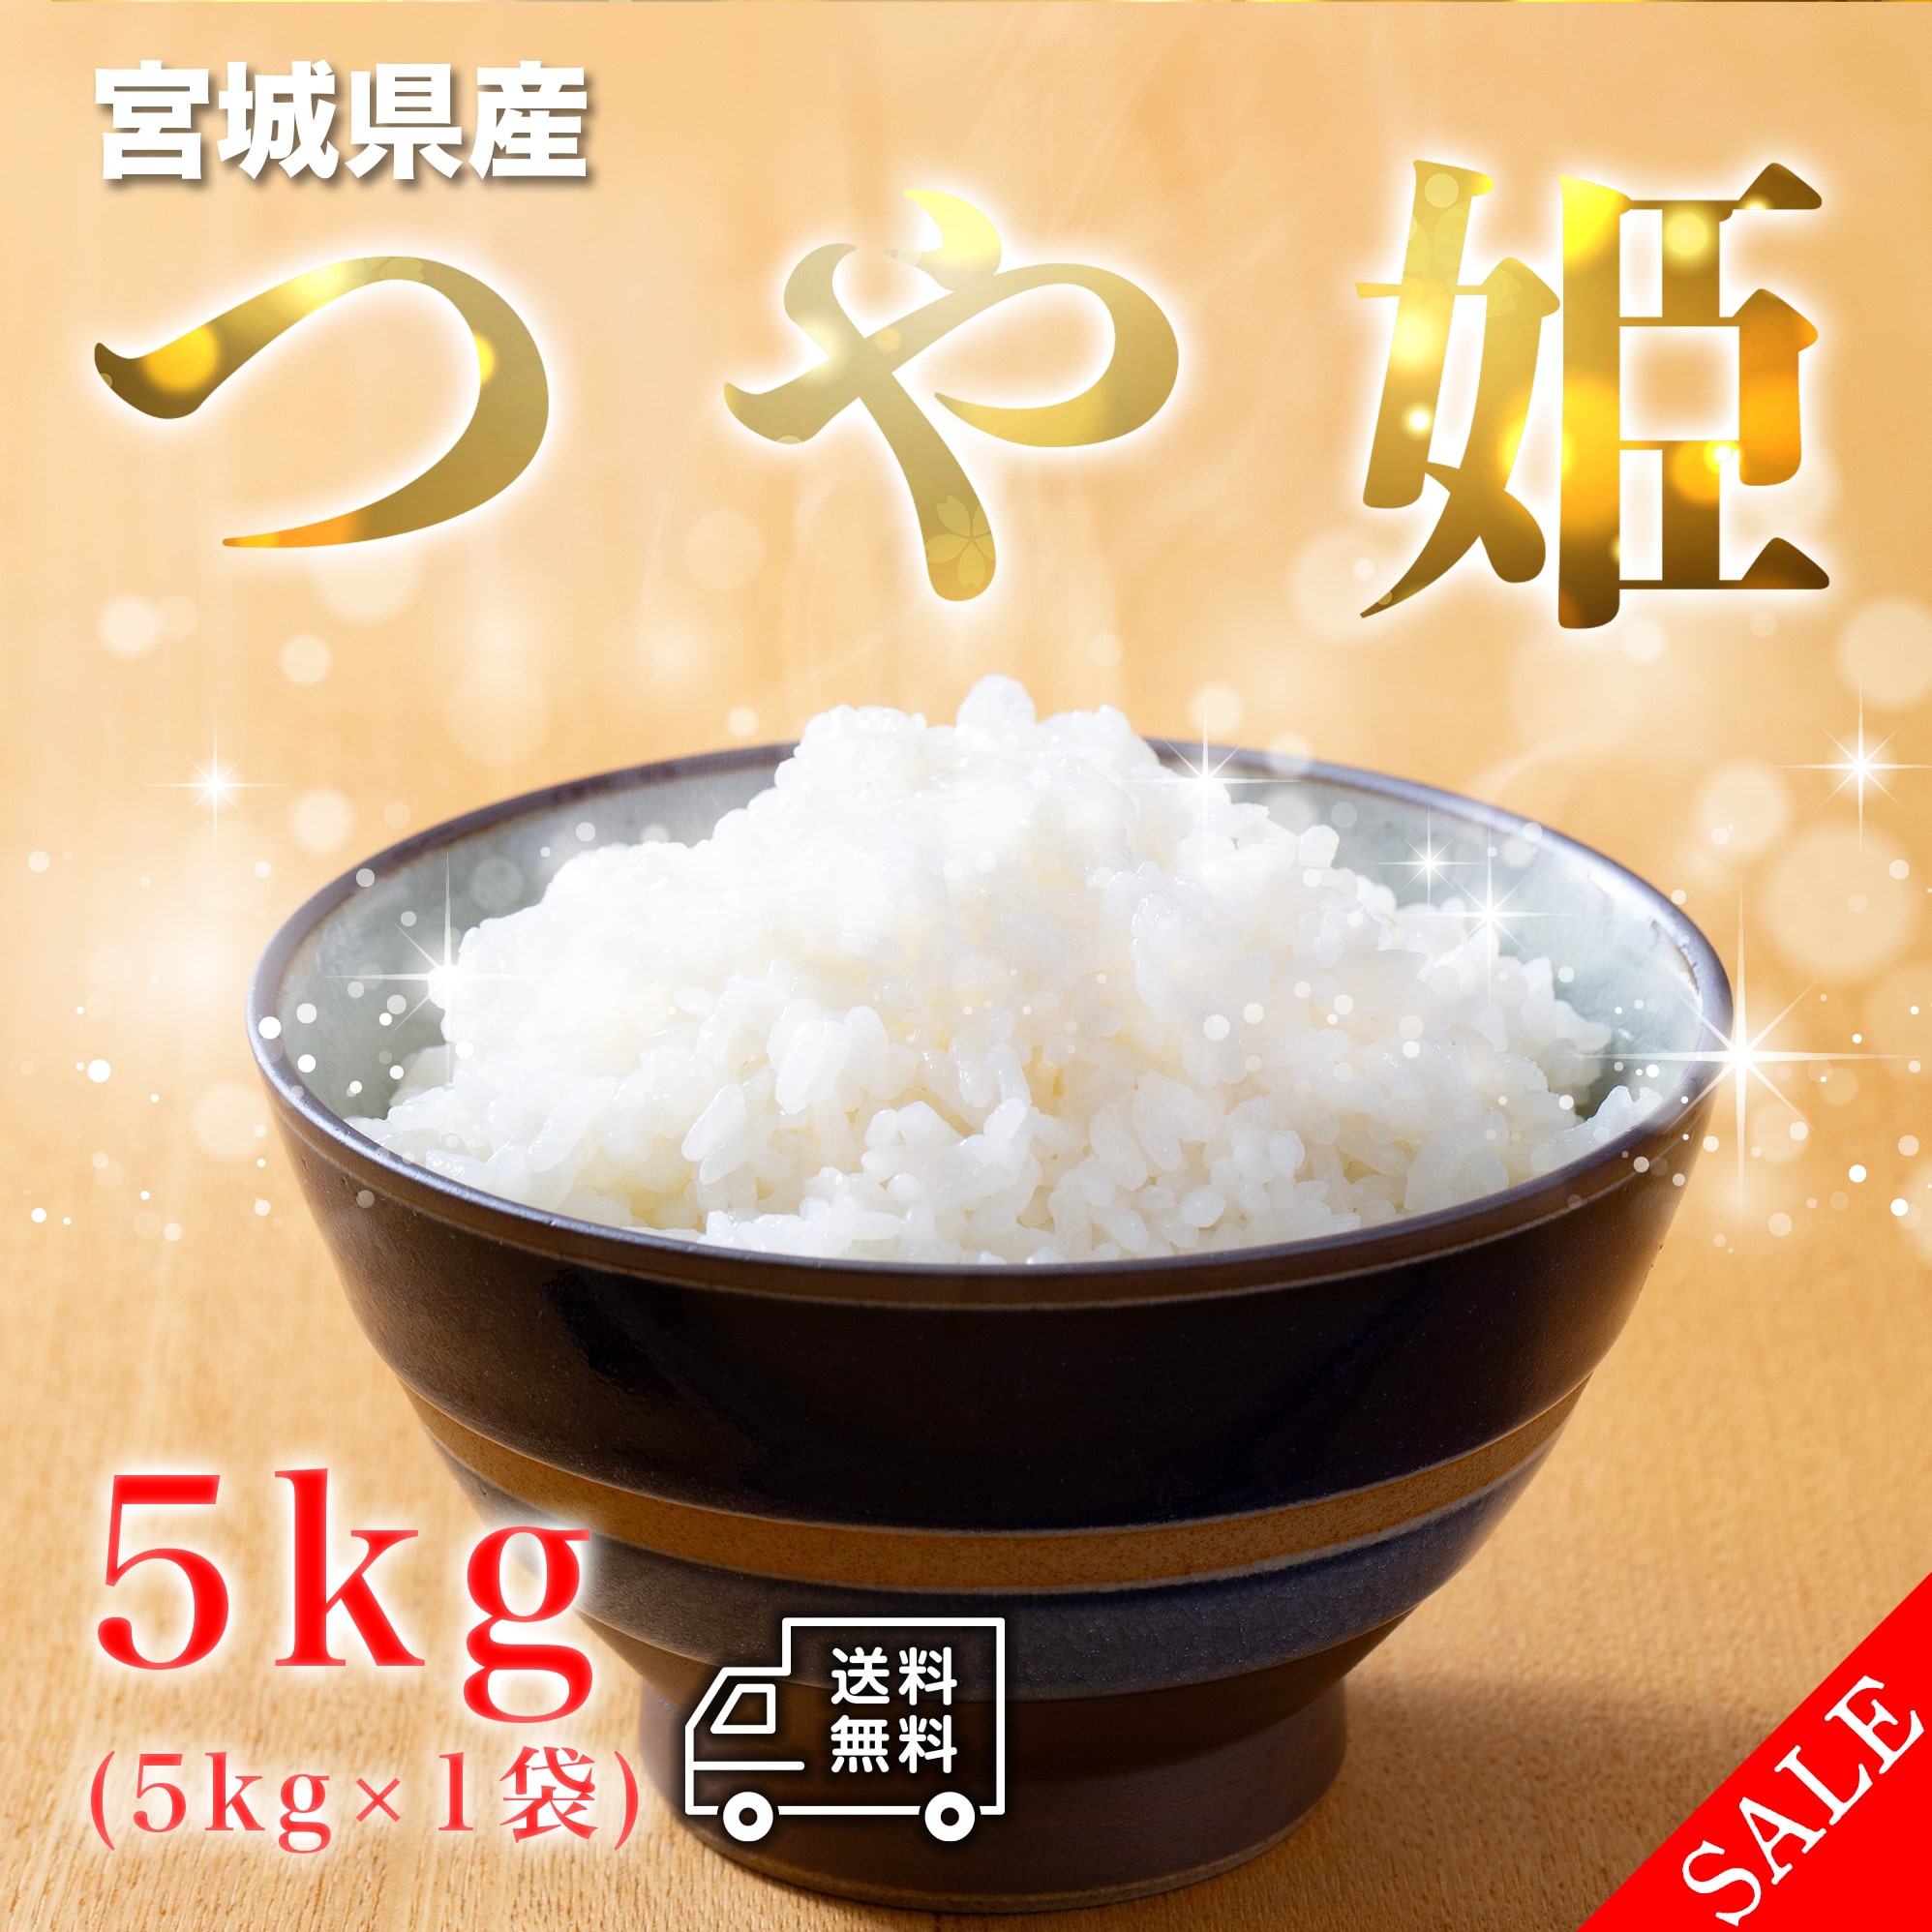  блеск .5kg 5kg×1 пакет . мир 5 год производство Miyagi префектура производство рис . рис белый рис .... рис одиночный один сырье рис бренд рис 5 kilo бесплатная доставка внутренний производство местного производства 10 kilo 